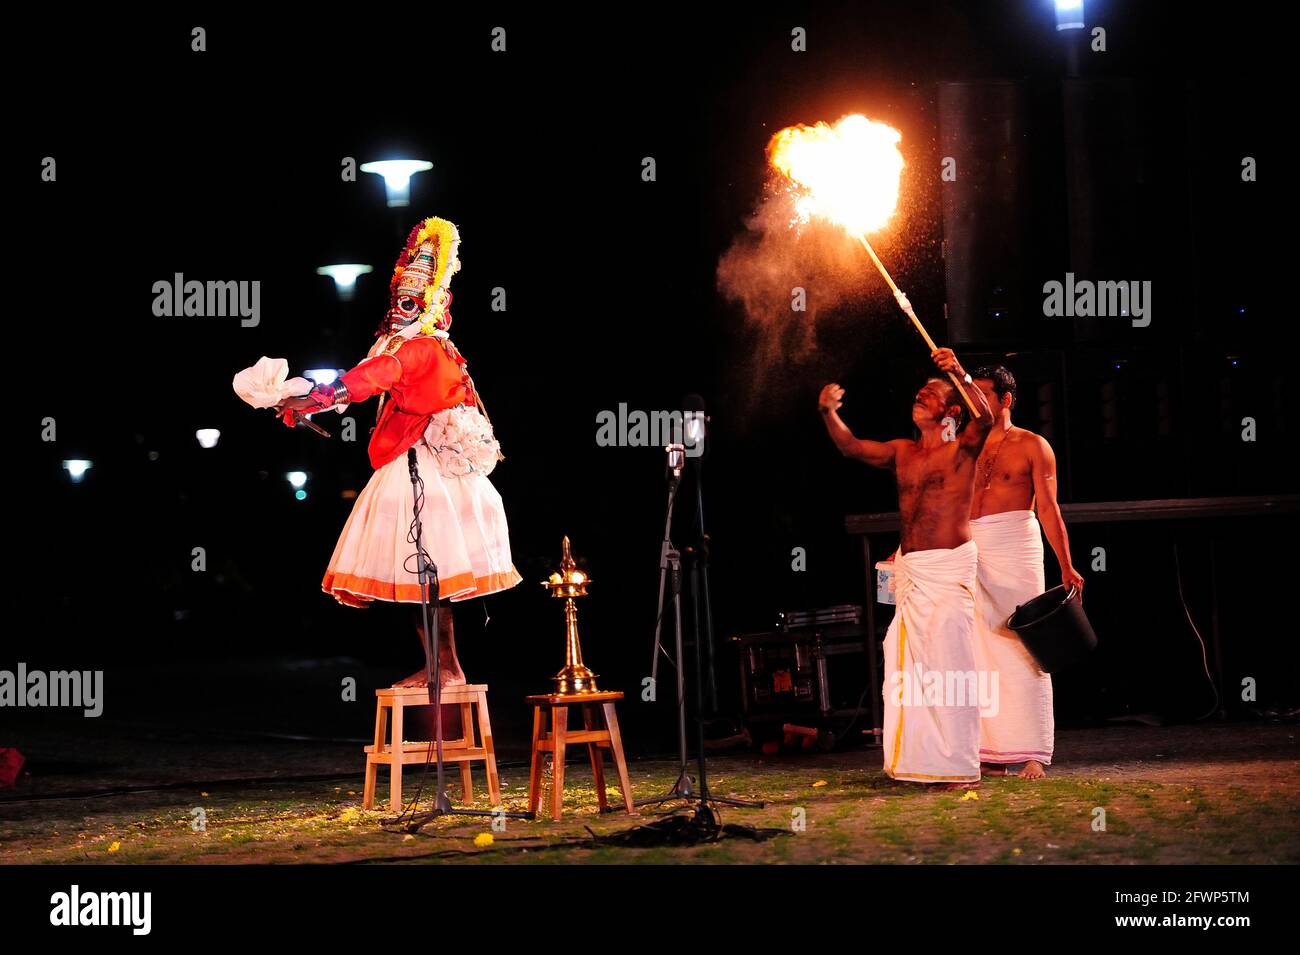 Mudijettu. Teatro ritual del templo de Kerala, Mudijettu. Teatro ritual de los templos de Kerala, la historia de los hechos heroicos de Bhadrakala - la historia del asesinato del demonio Darika (d‚rikavadham) ritual de culto de fertilidad, ritual de Kerala, foto kazimierz jurewicz, MUDIJETTU es probablemente una de las tradiciones teatrales más antiguas de la India Foto de stock